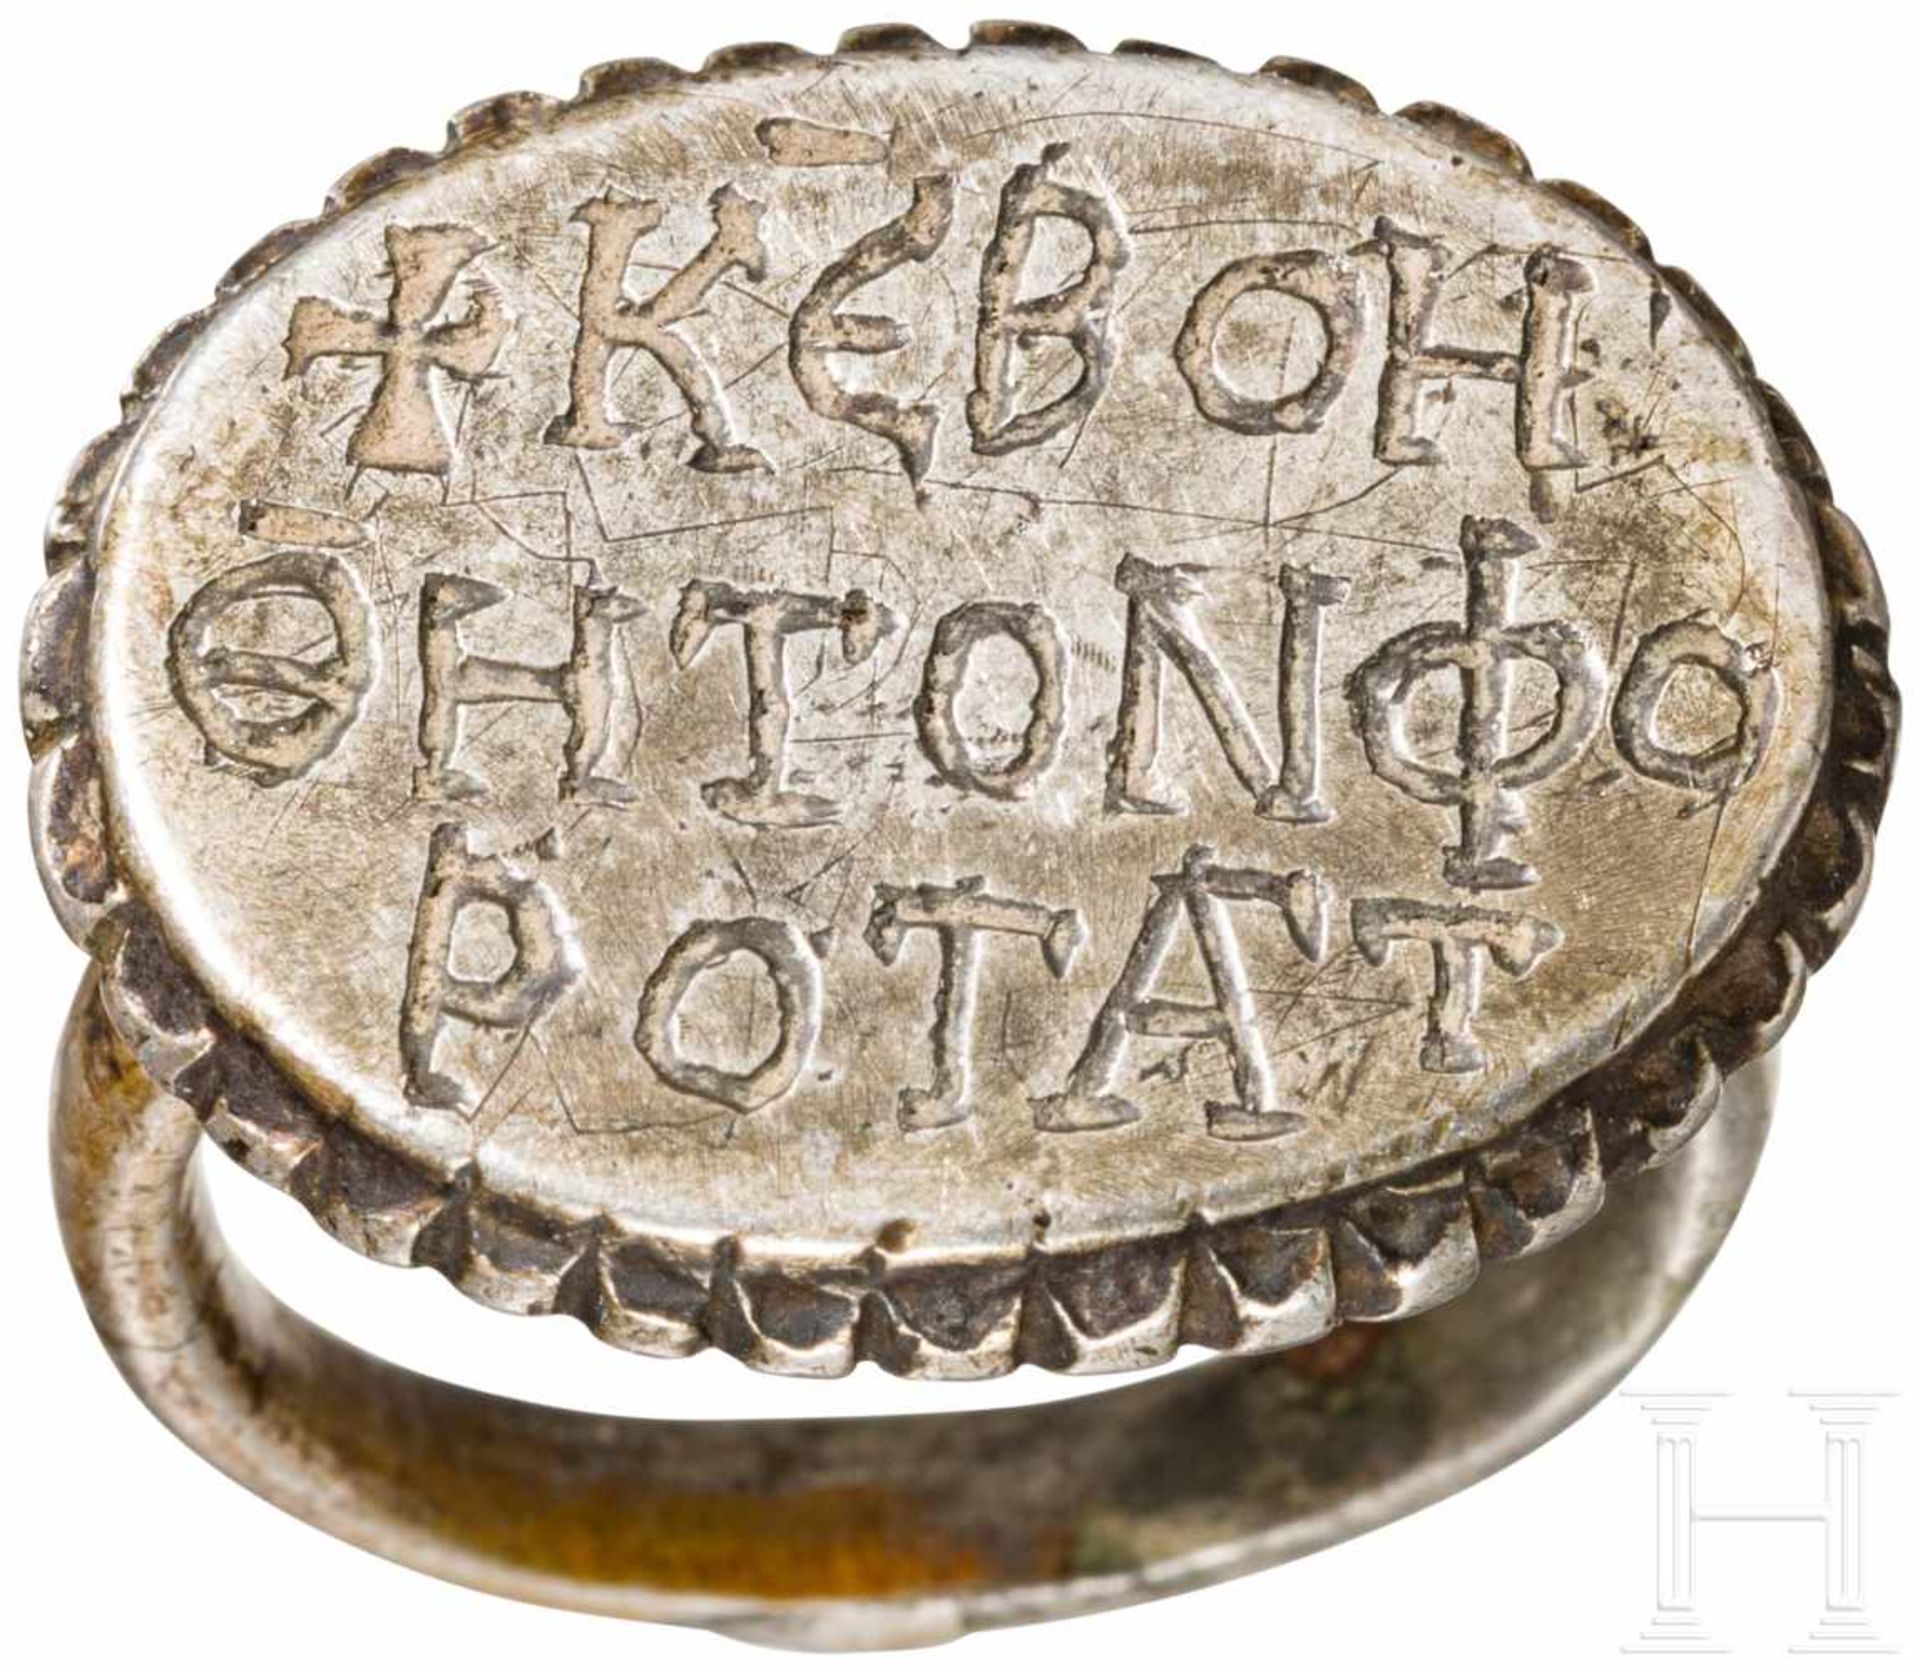 Silberring mit griechischer Inschrift, mittelbyzantinisch, 9. - 11. Jhdt.Silberner Fingerring mit